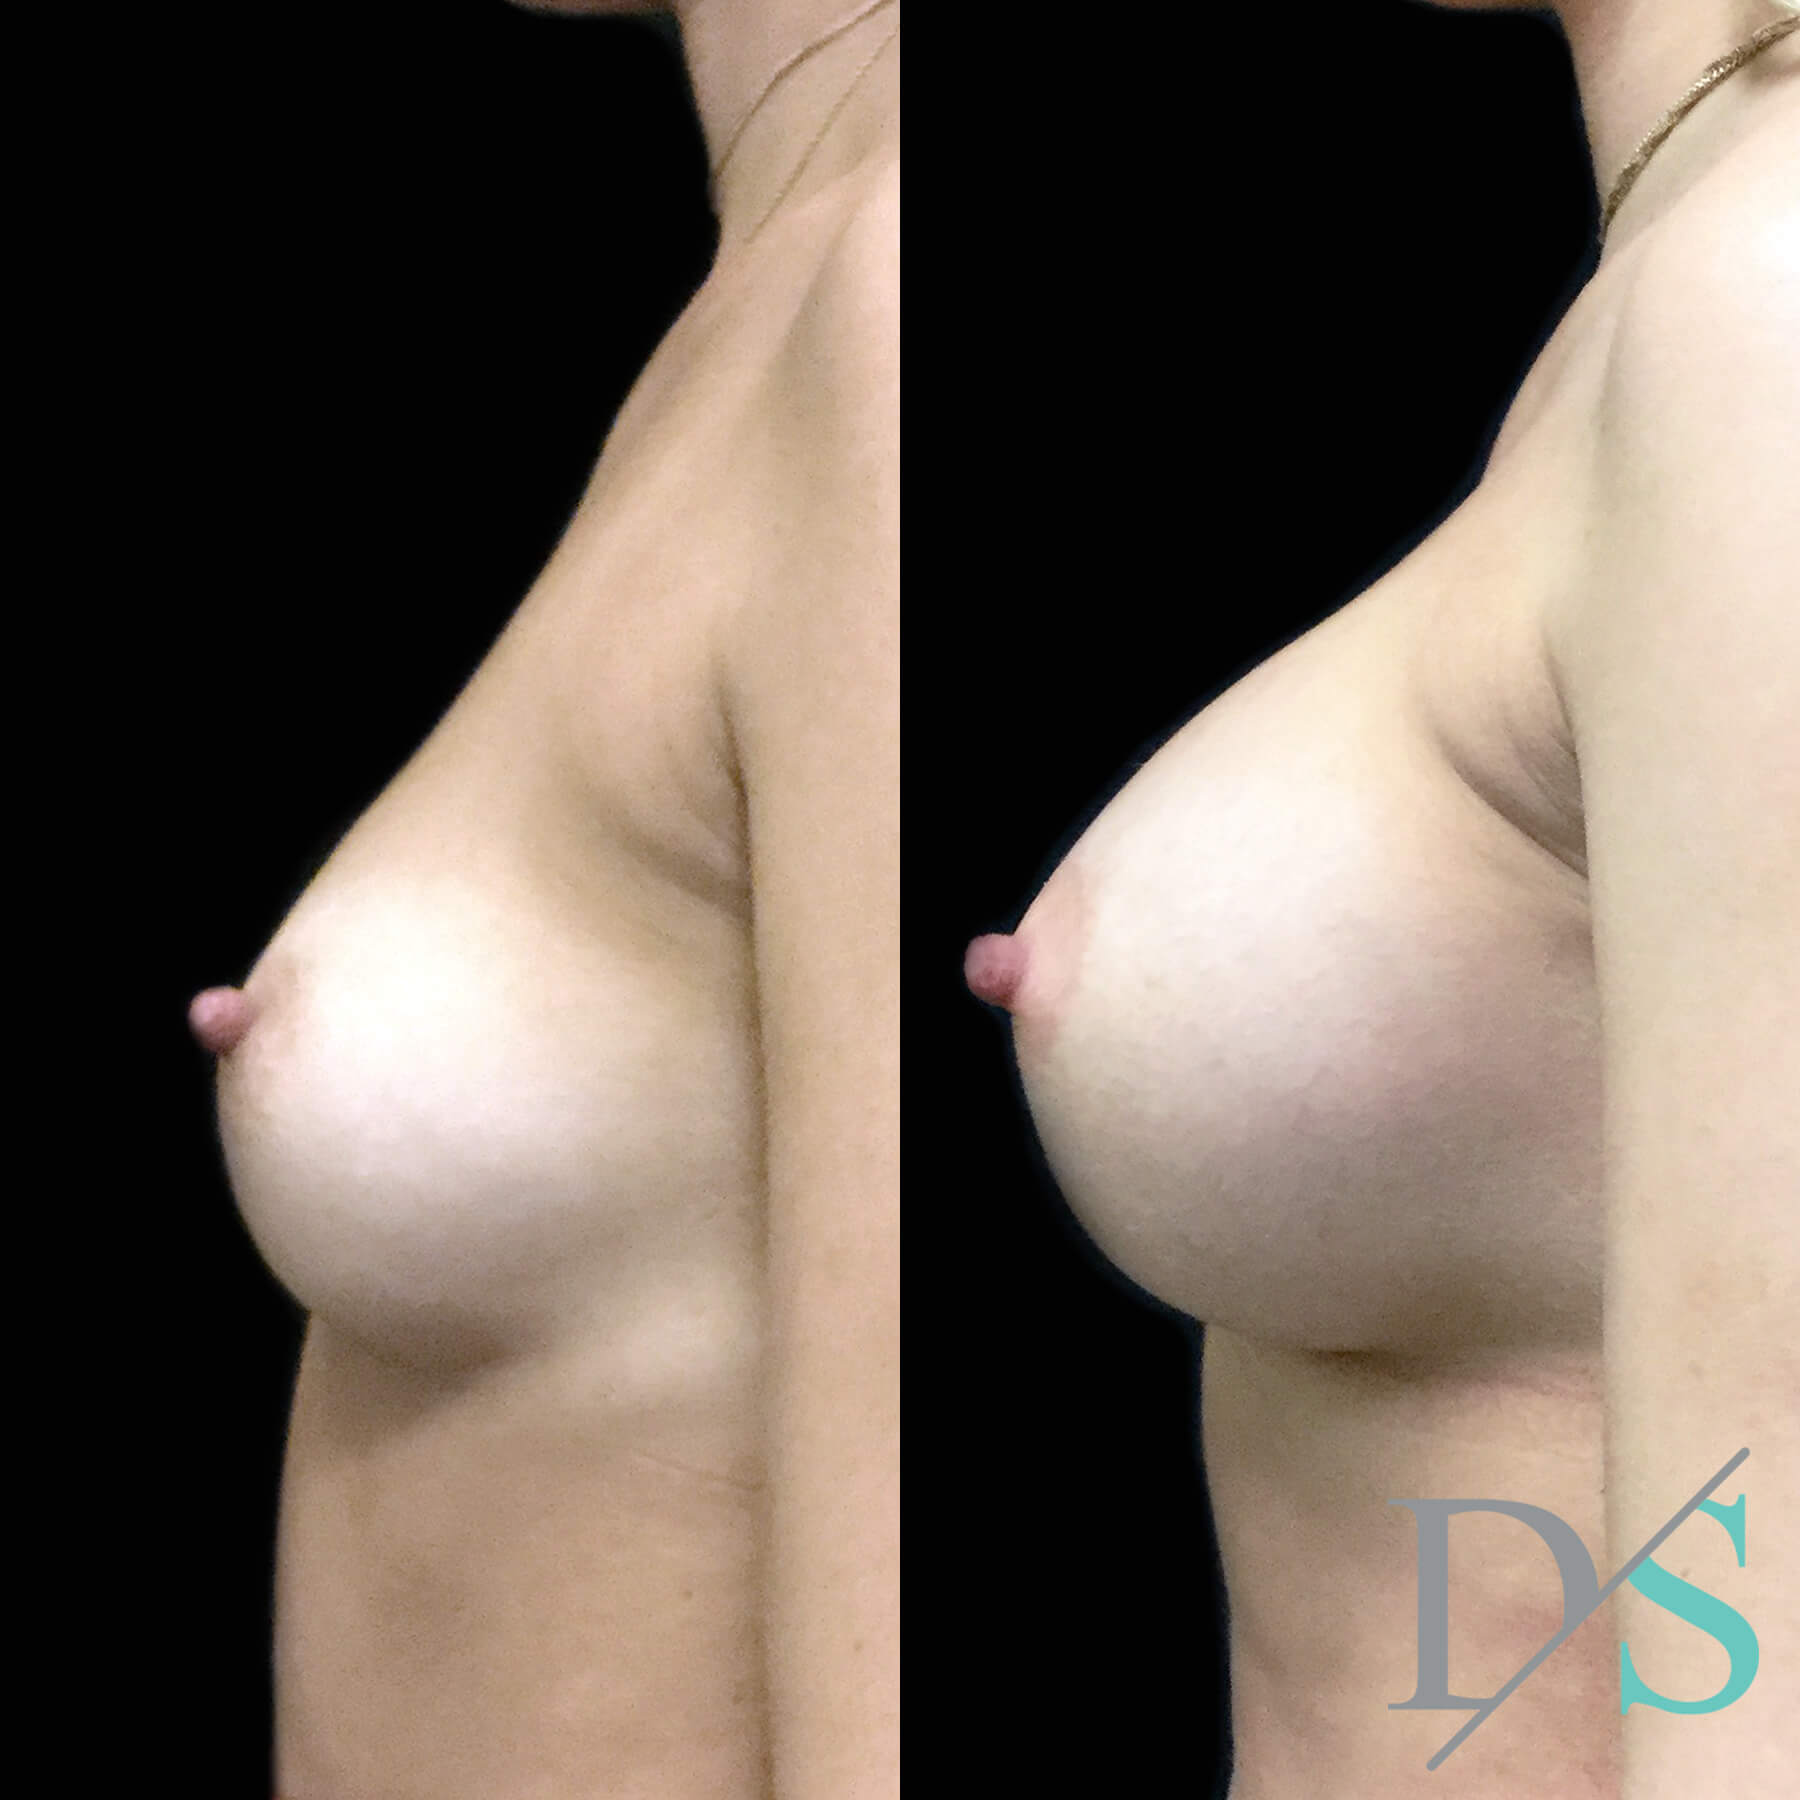 Dr David Sharp breast augmentation surgeon Brisbane and Ipswich 